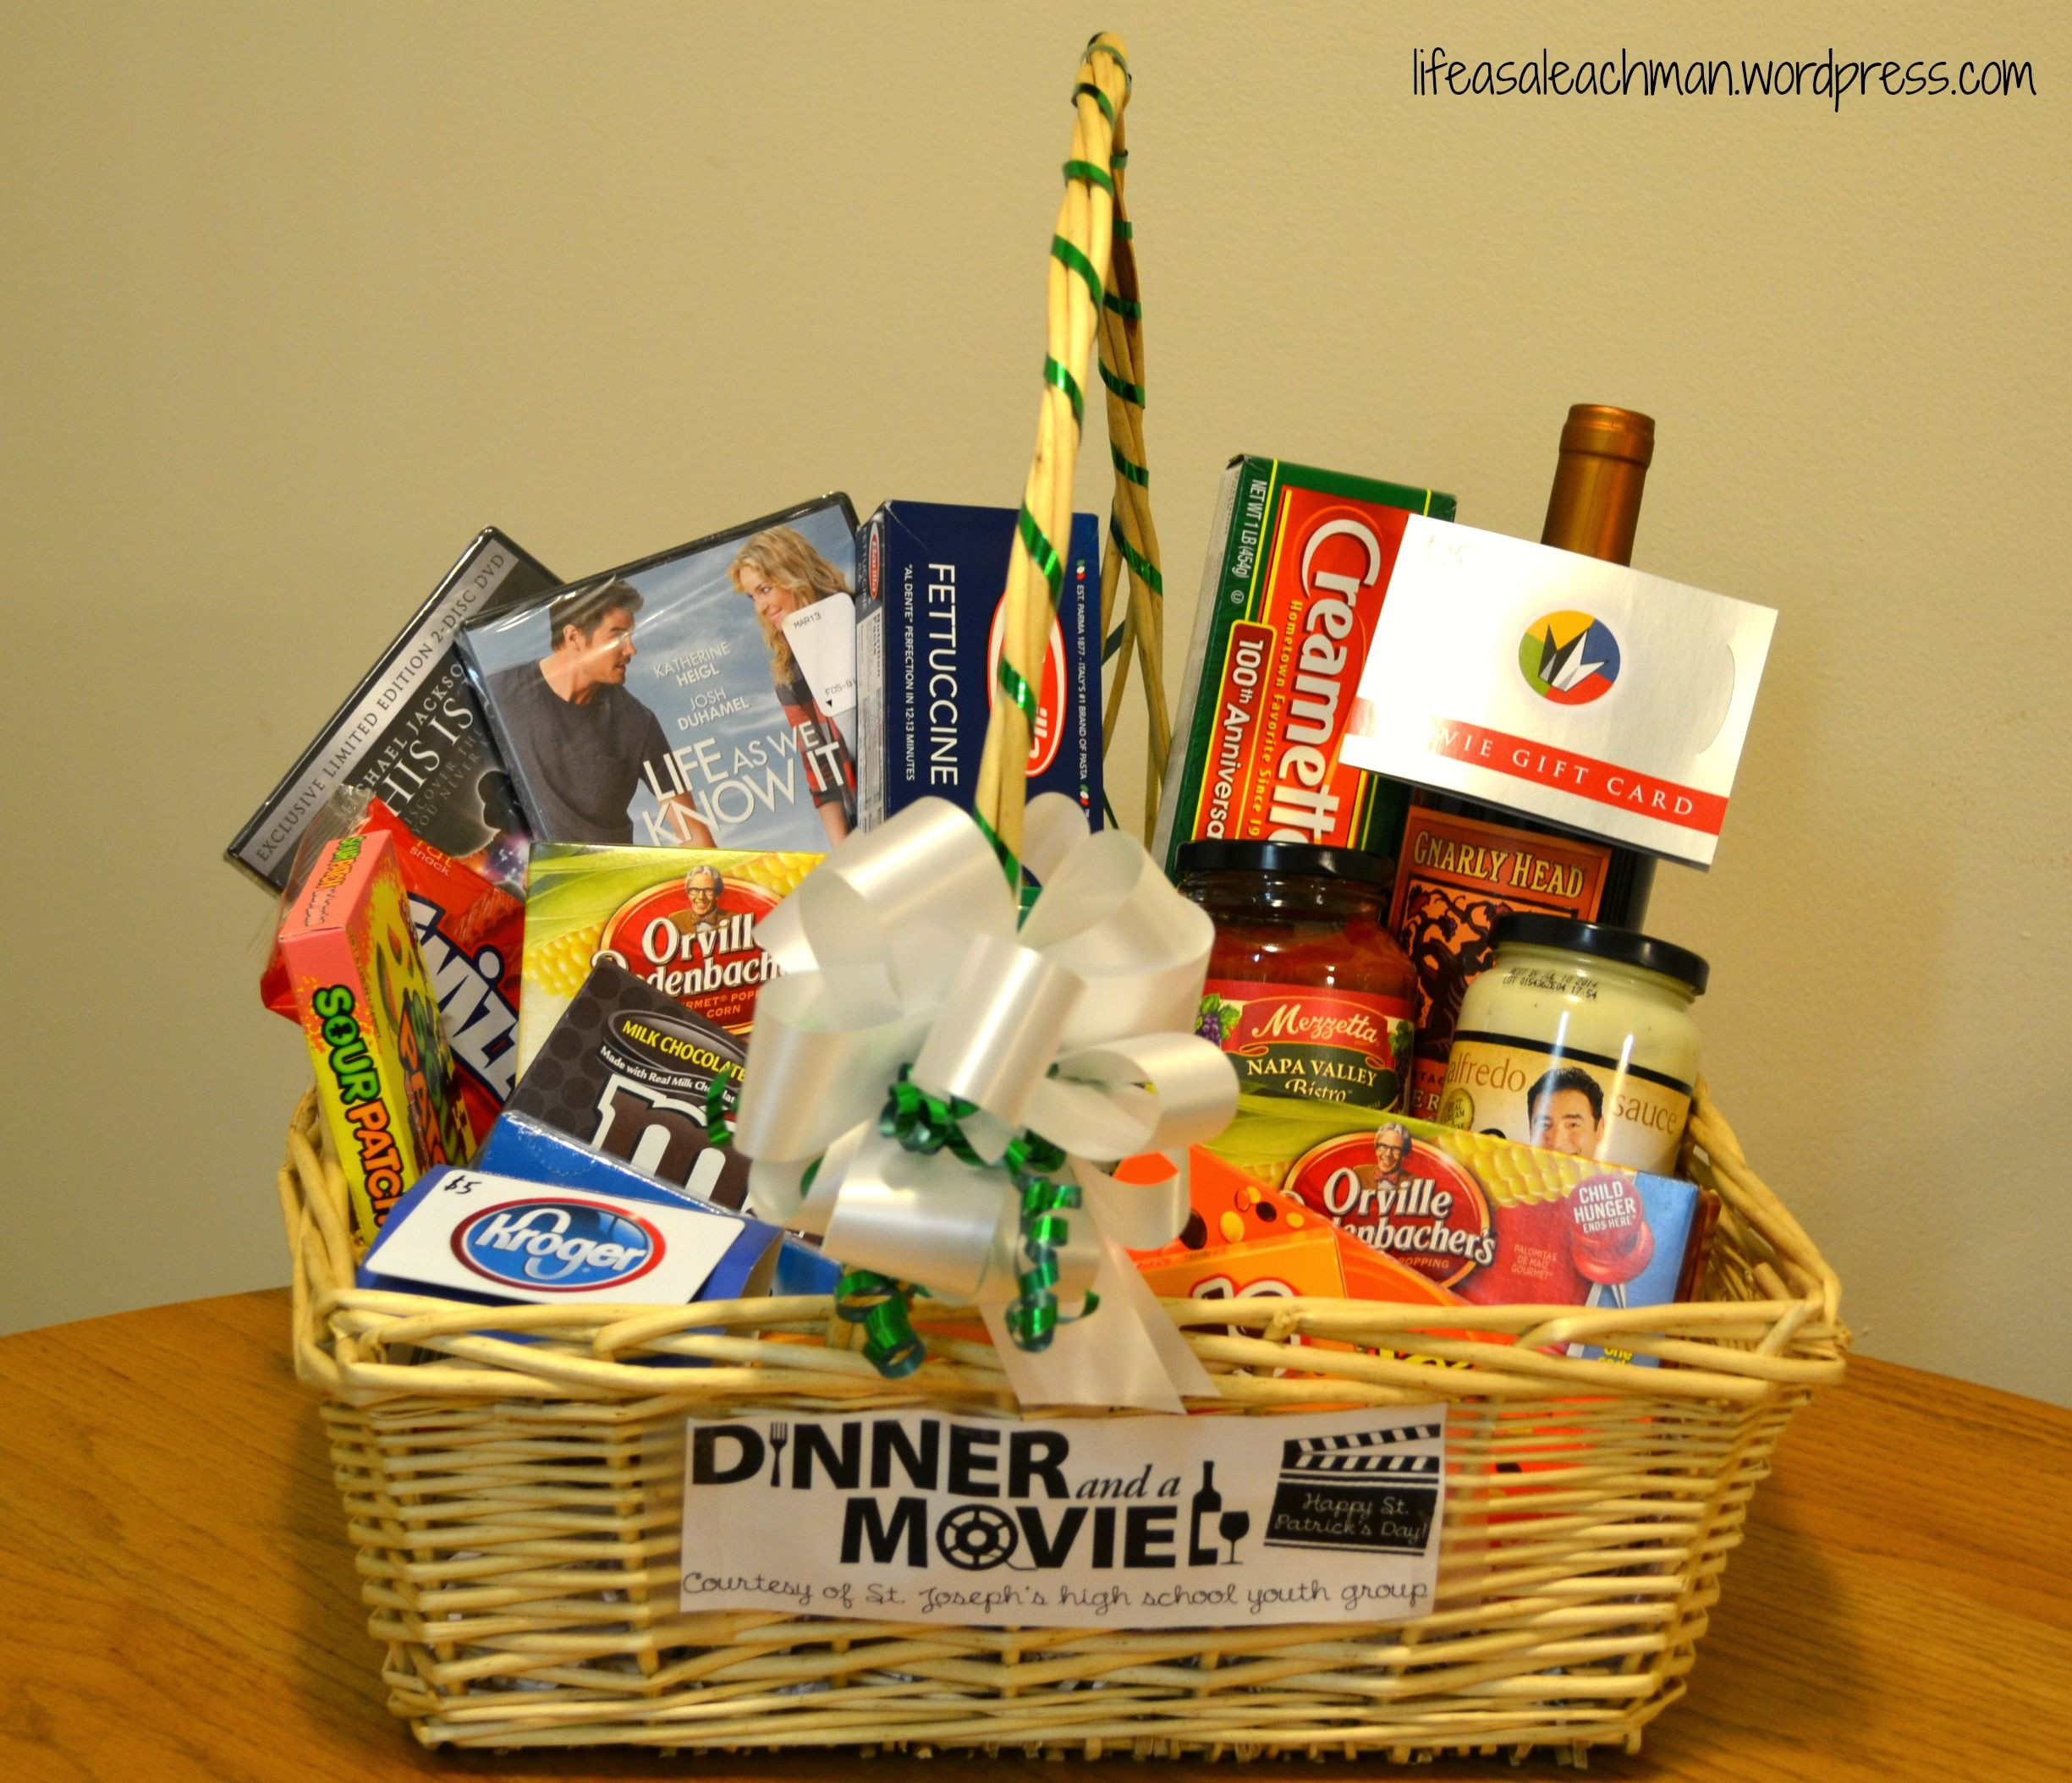 Movie Gift Basket Ideas
 ‘Dinner & a Movie’ t basket Fun ideas